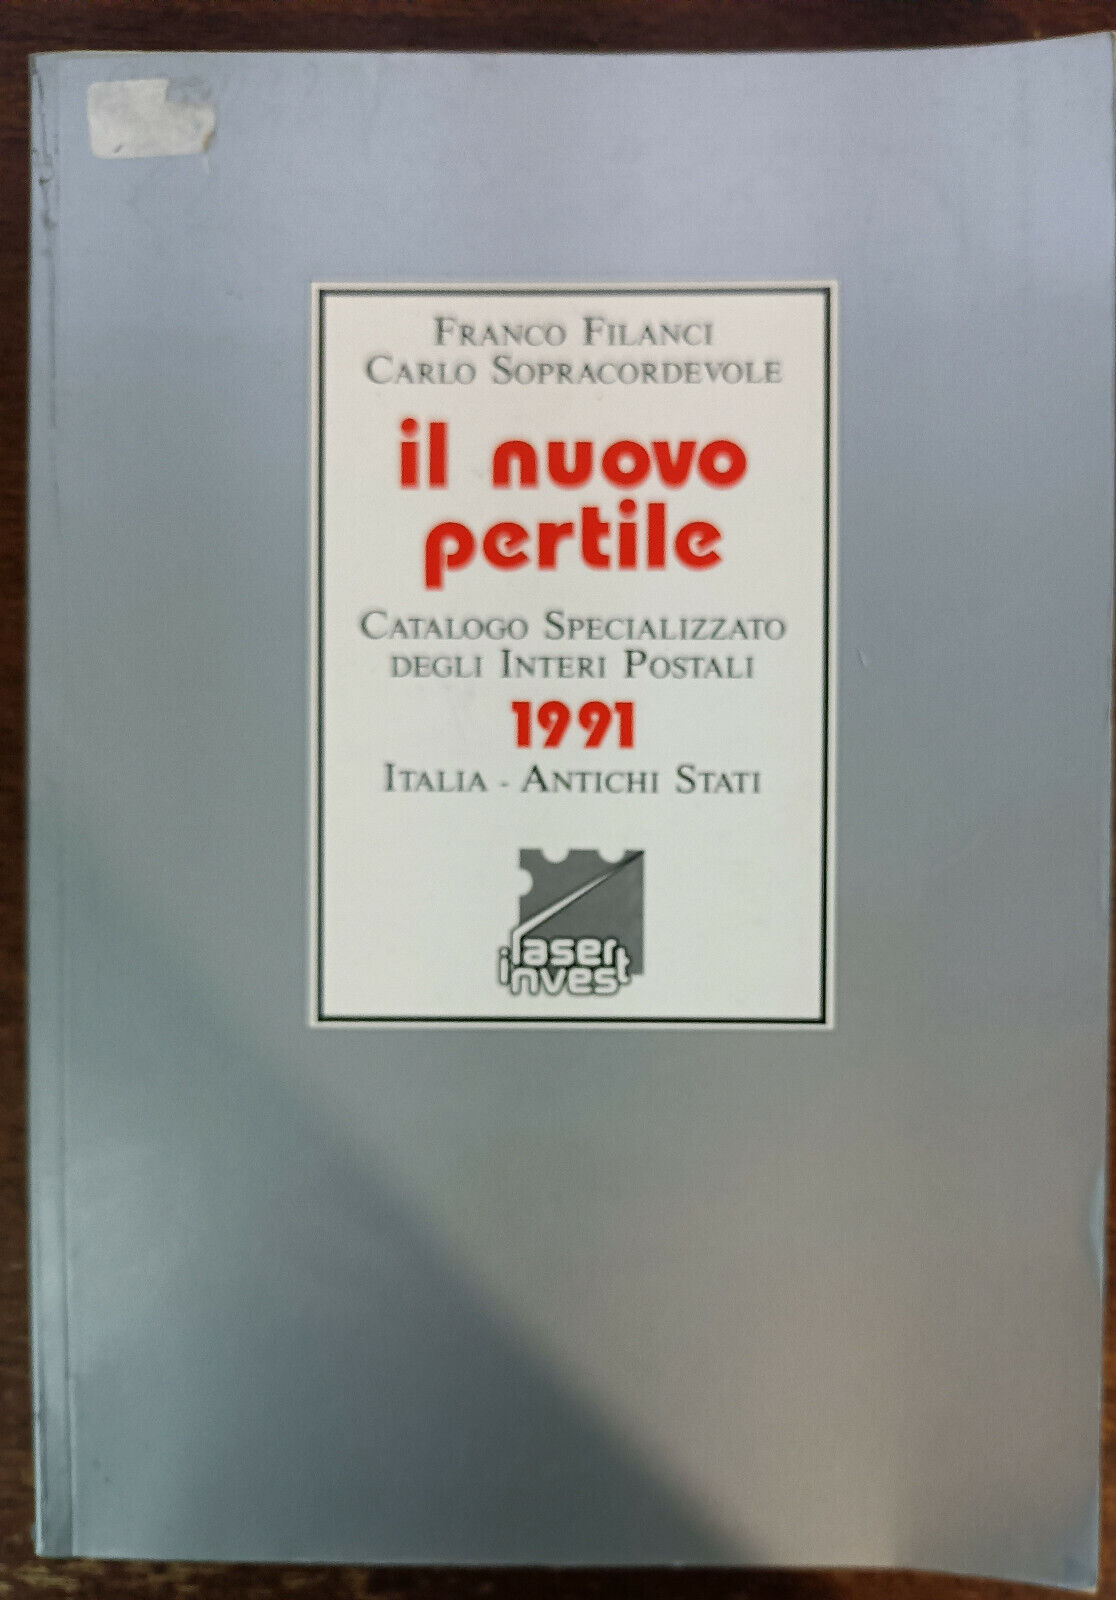 Il nuovo pertile - Franco Filanci, Carlo Sopracordevole - Laser invest, 1991 - A